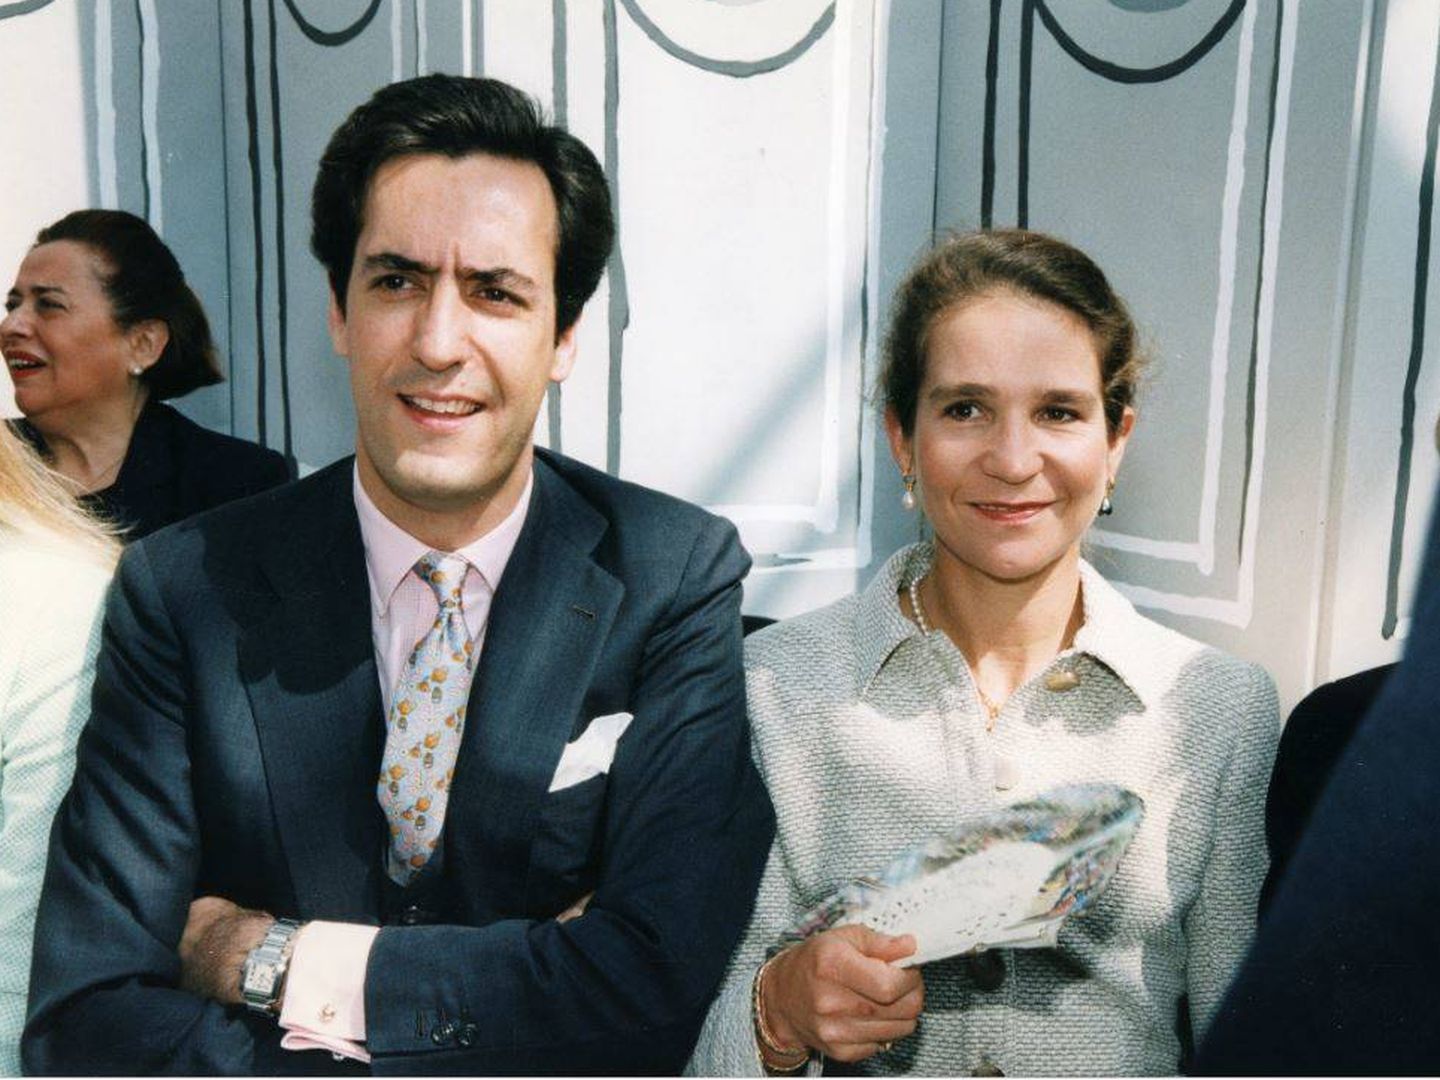 Jaime de Marichalar y la infanta Elena en un desfile de Chanel en París en 1997. (Getty)